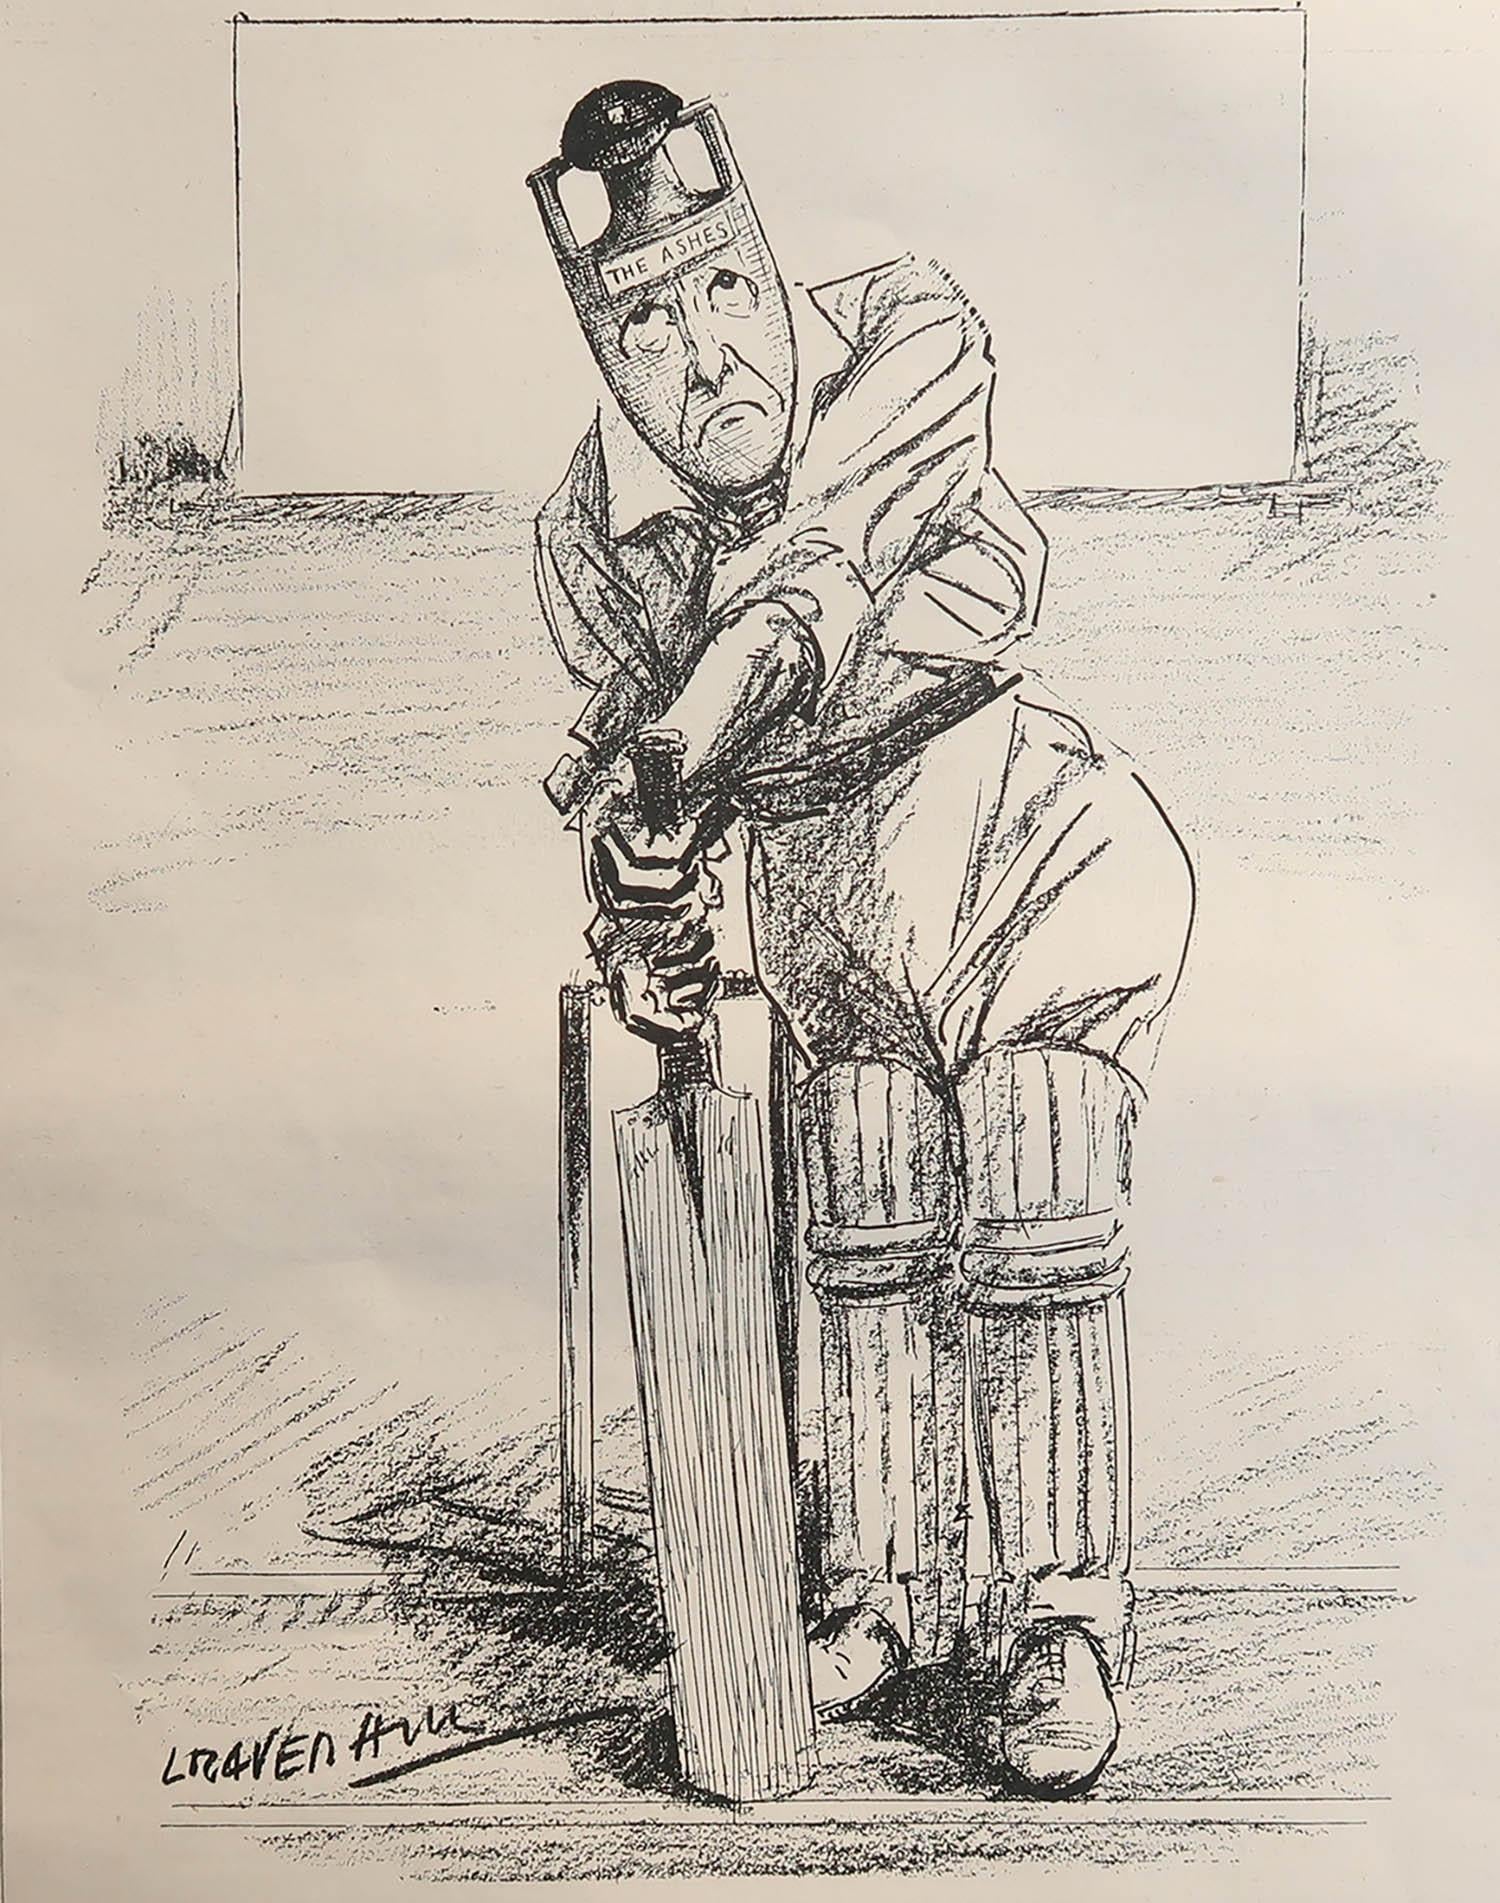 Super Cricket-Bild

Ursprünglich eine Platte aus Punch oder The London Charivari

Veröffentlicht 1934

Das angegebene Maß ist die Papiergröße



